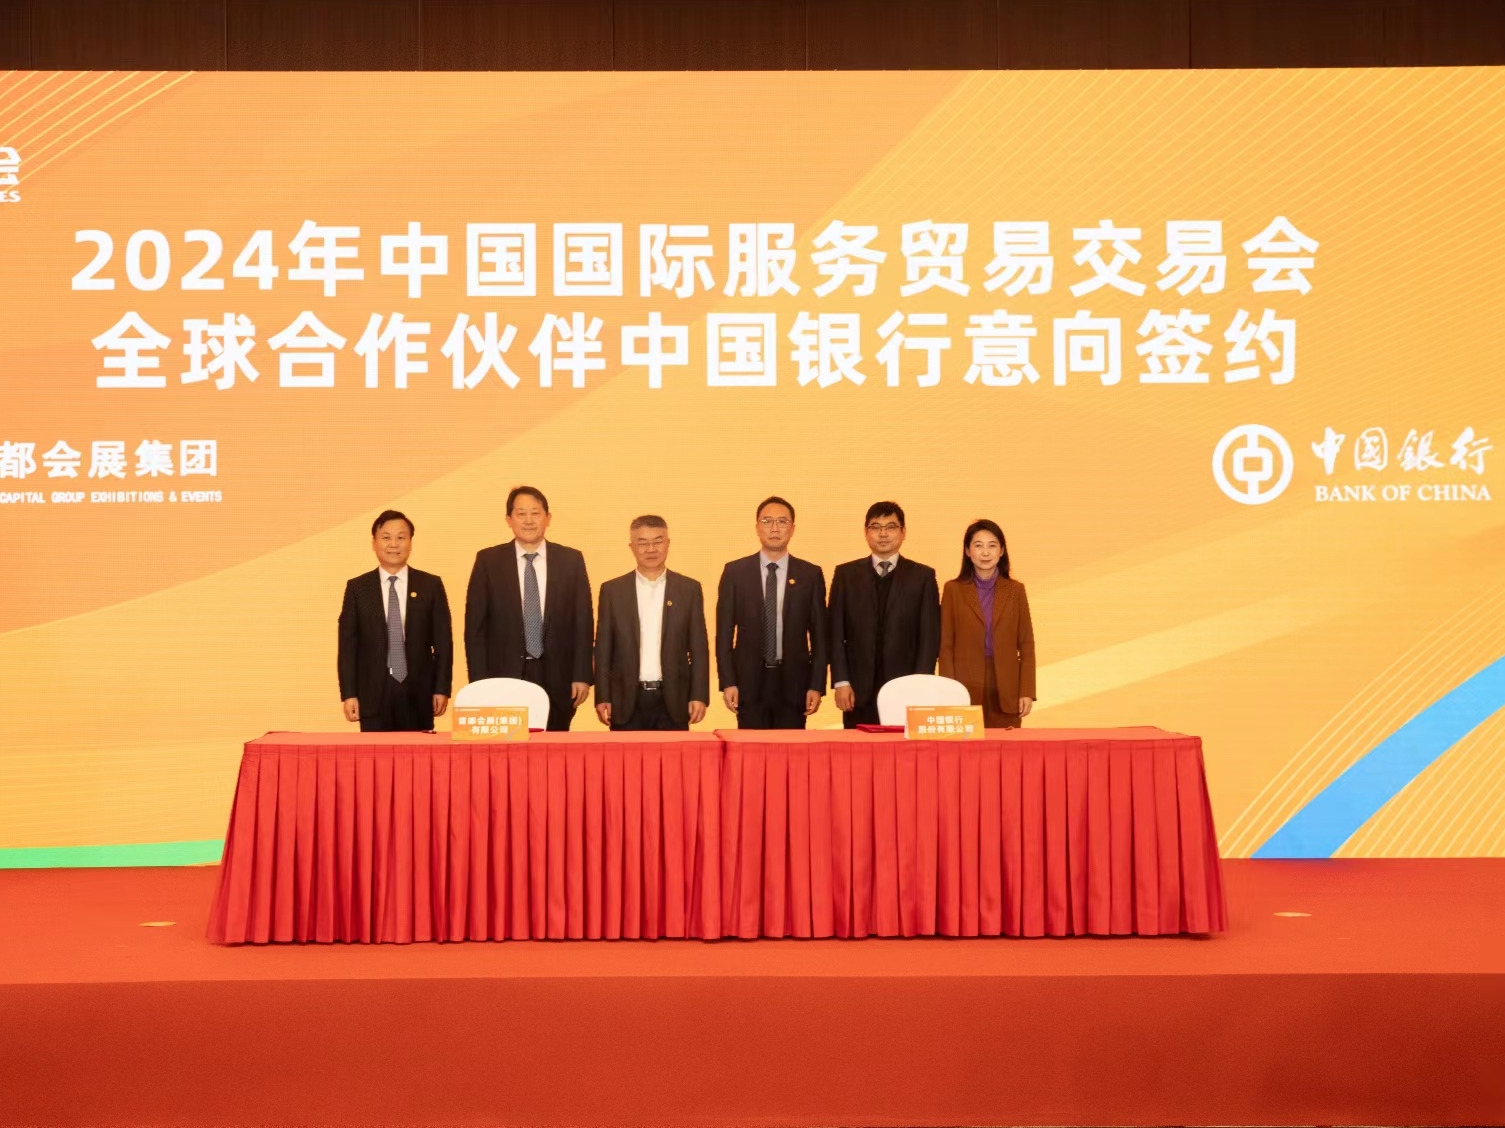 圖片4：2024年服貿會全球合作夥伴中國銀行意向簽約.jpg